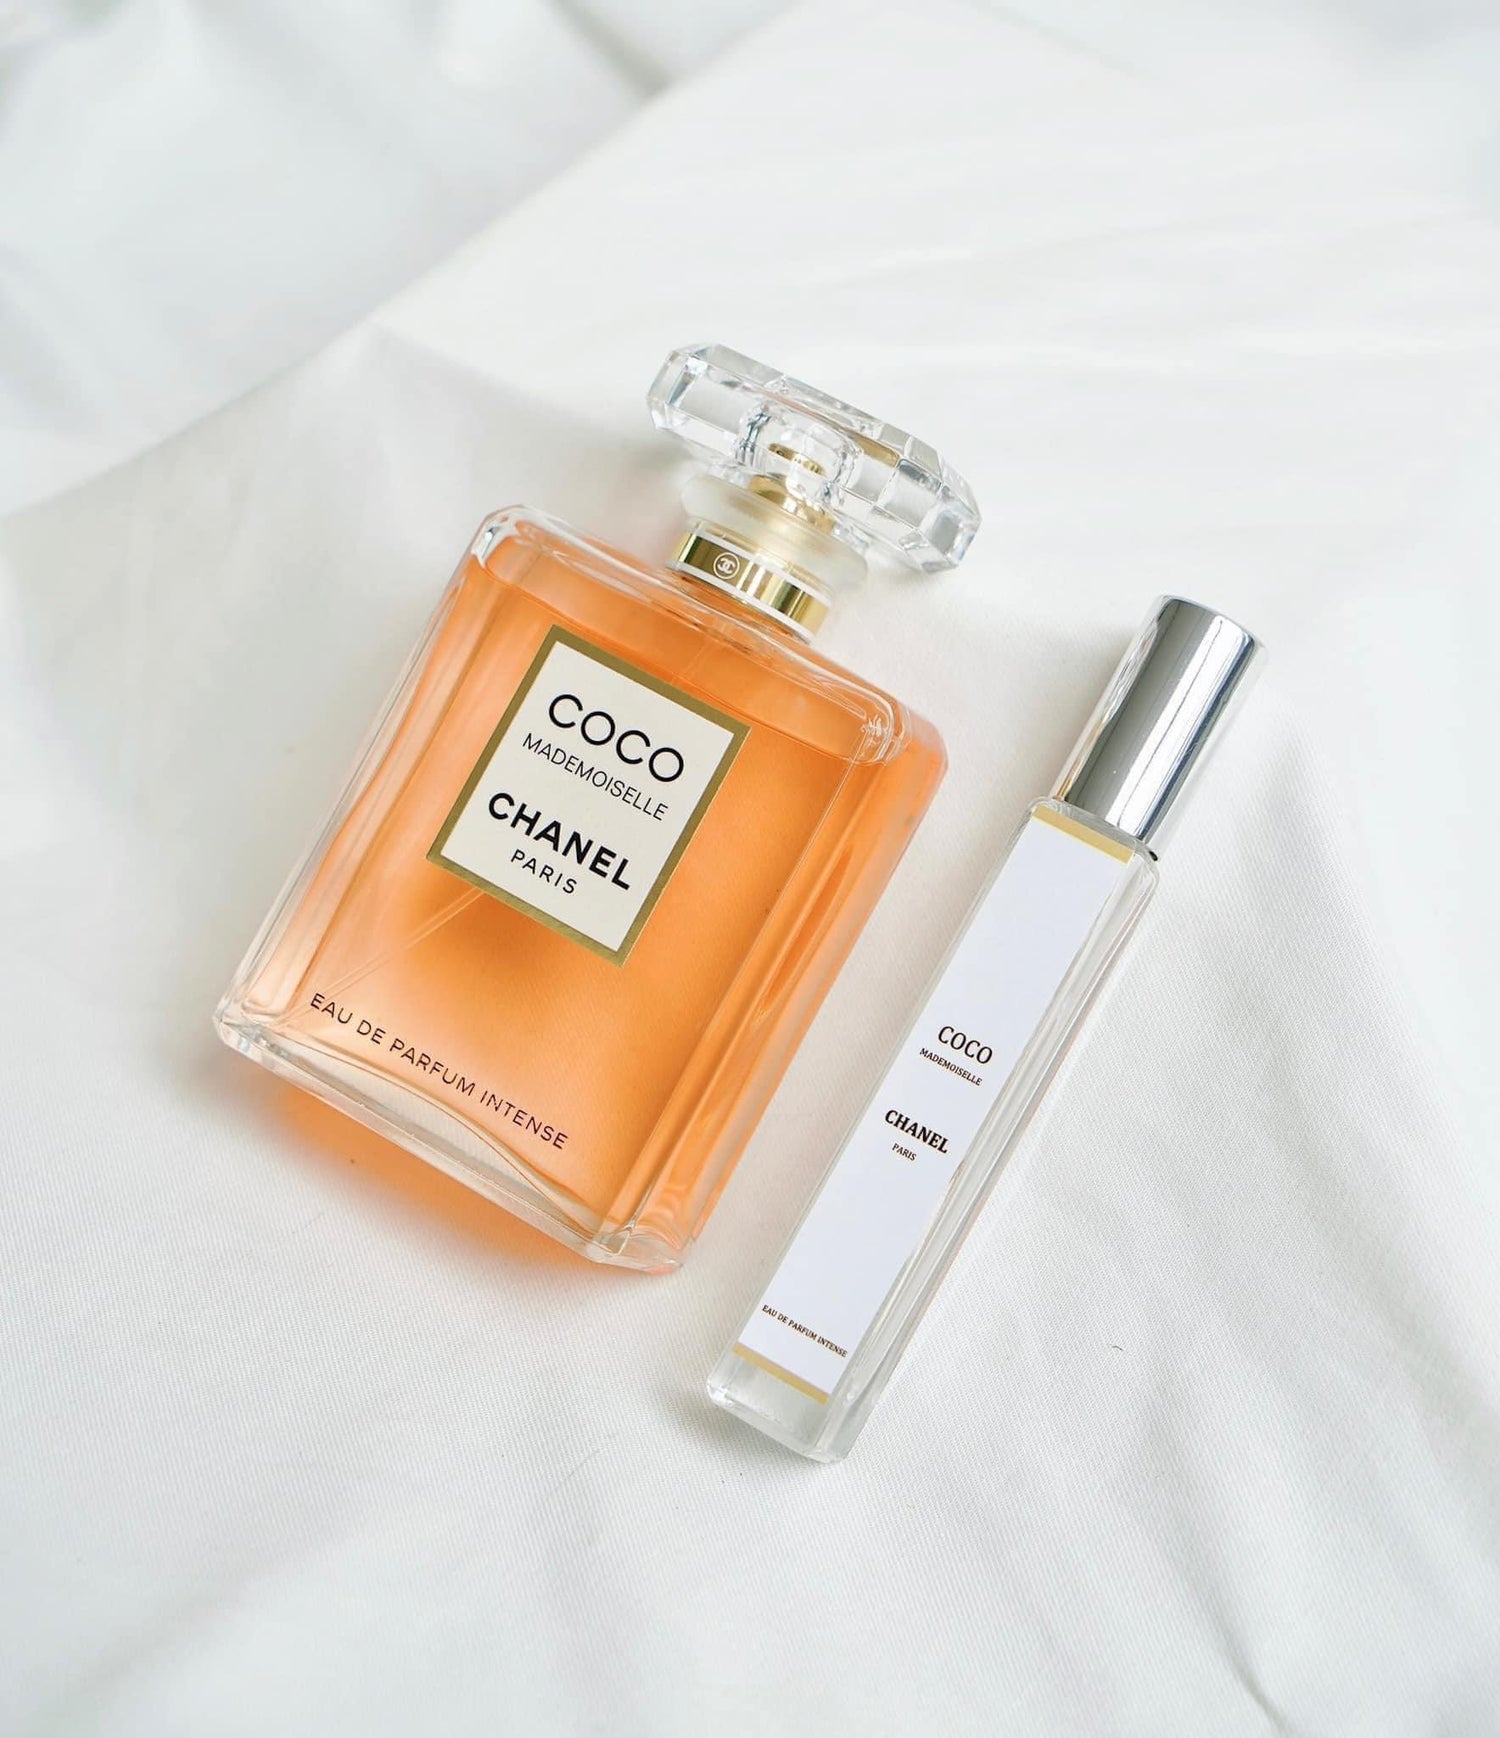 Nước hoa nữ Chanel Coco Mademoiselle Eau de Parfum 100ml hàng hiệu xách tay  chính hãng